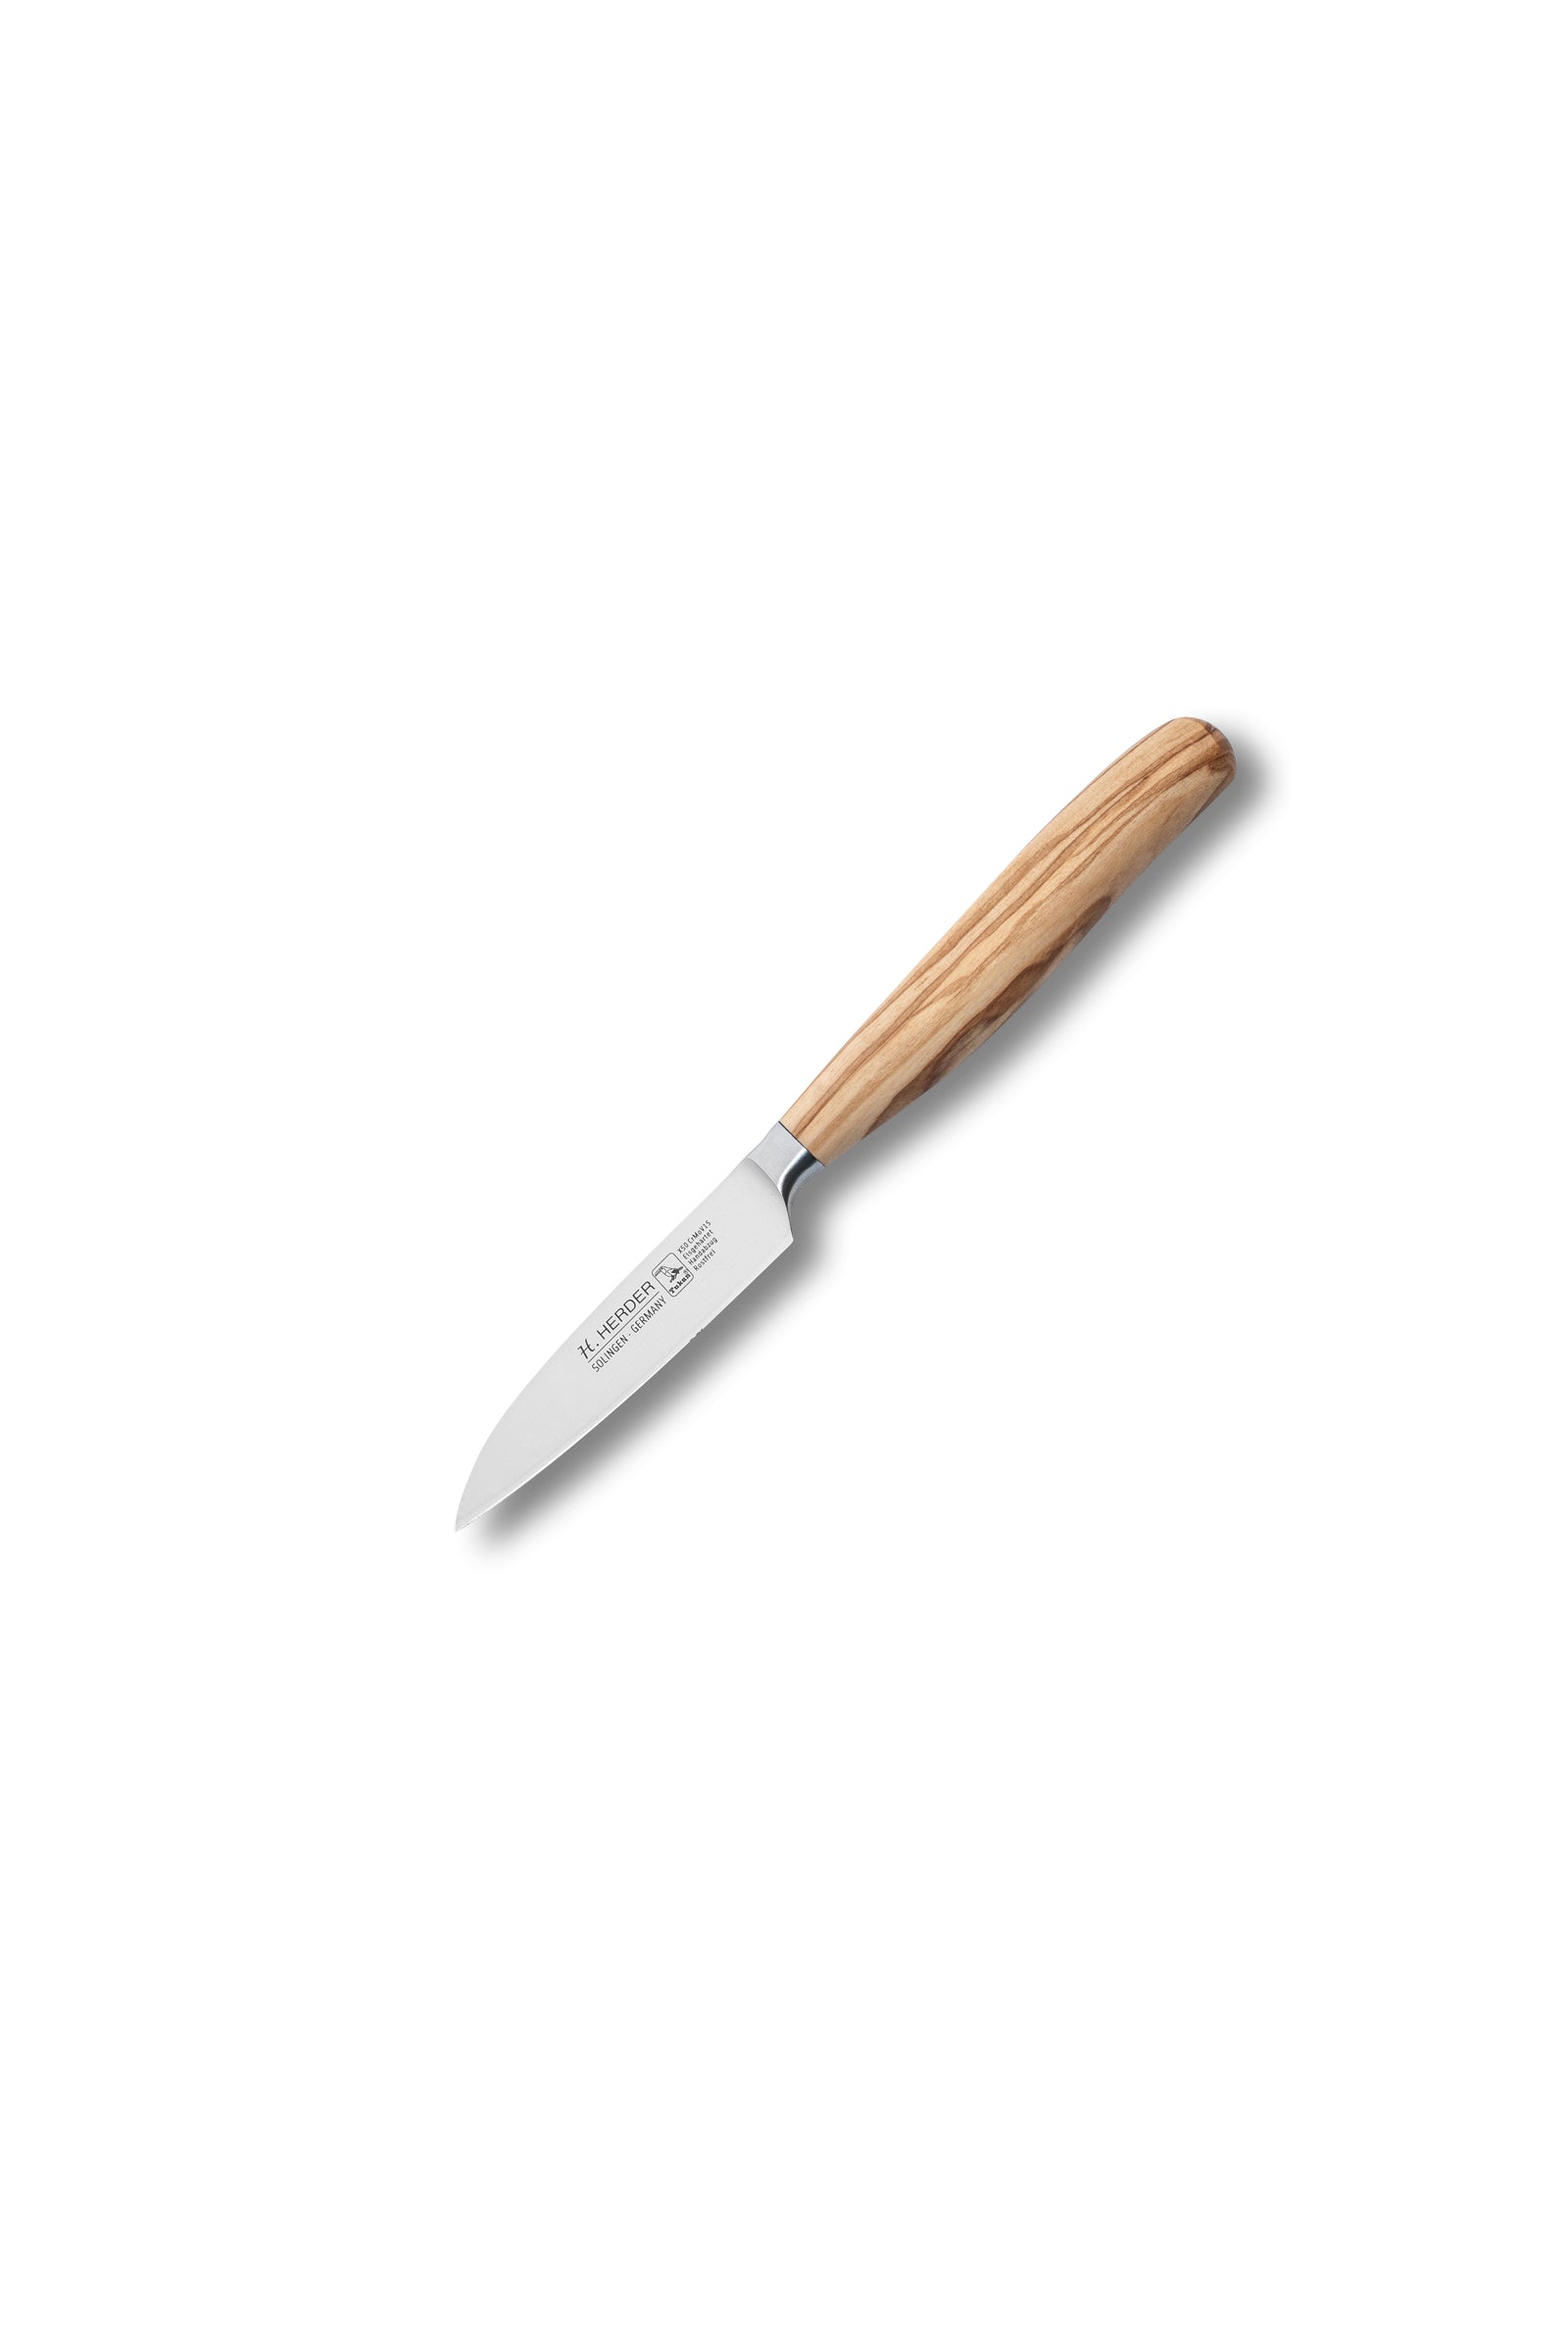 Cuchillo Eterno, madera de olivo, longitud de la hoja 9cm, forjado